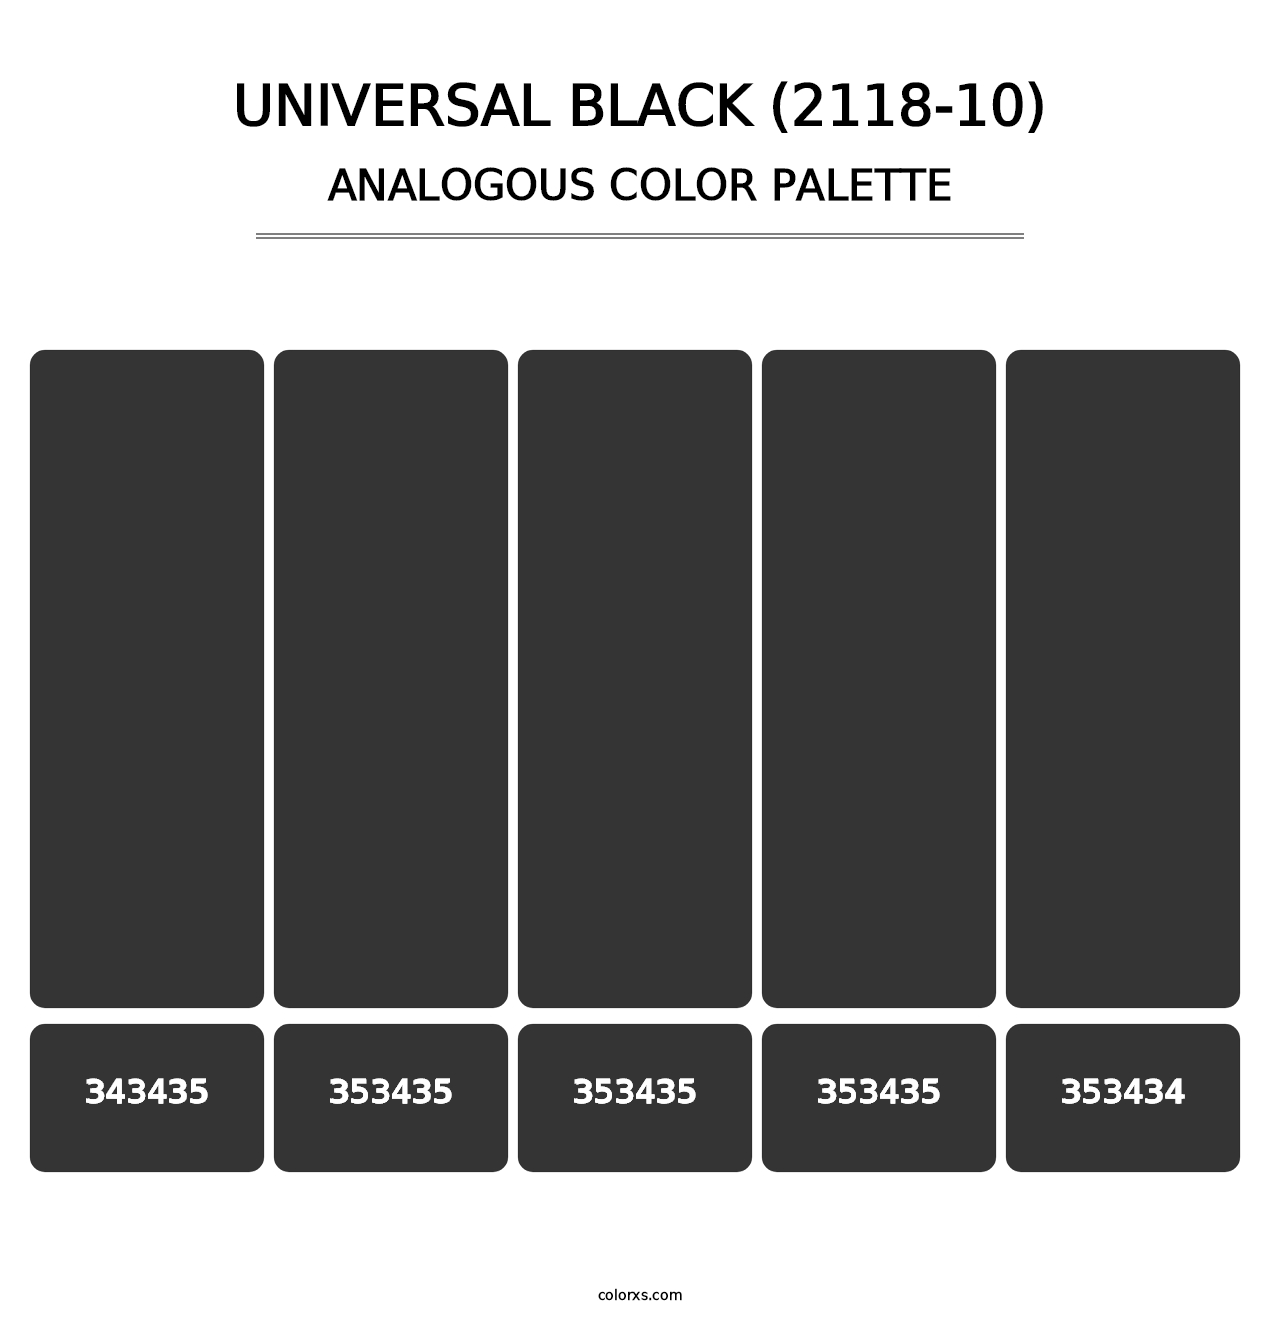 Universal Black (2118-10) - Analogous Color Palette